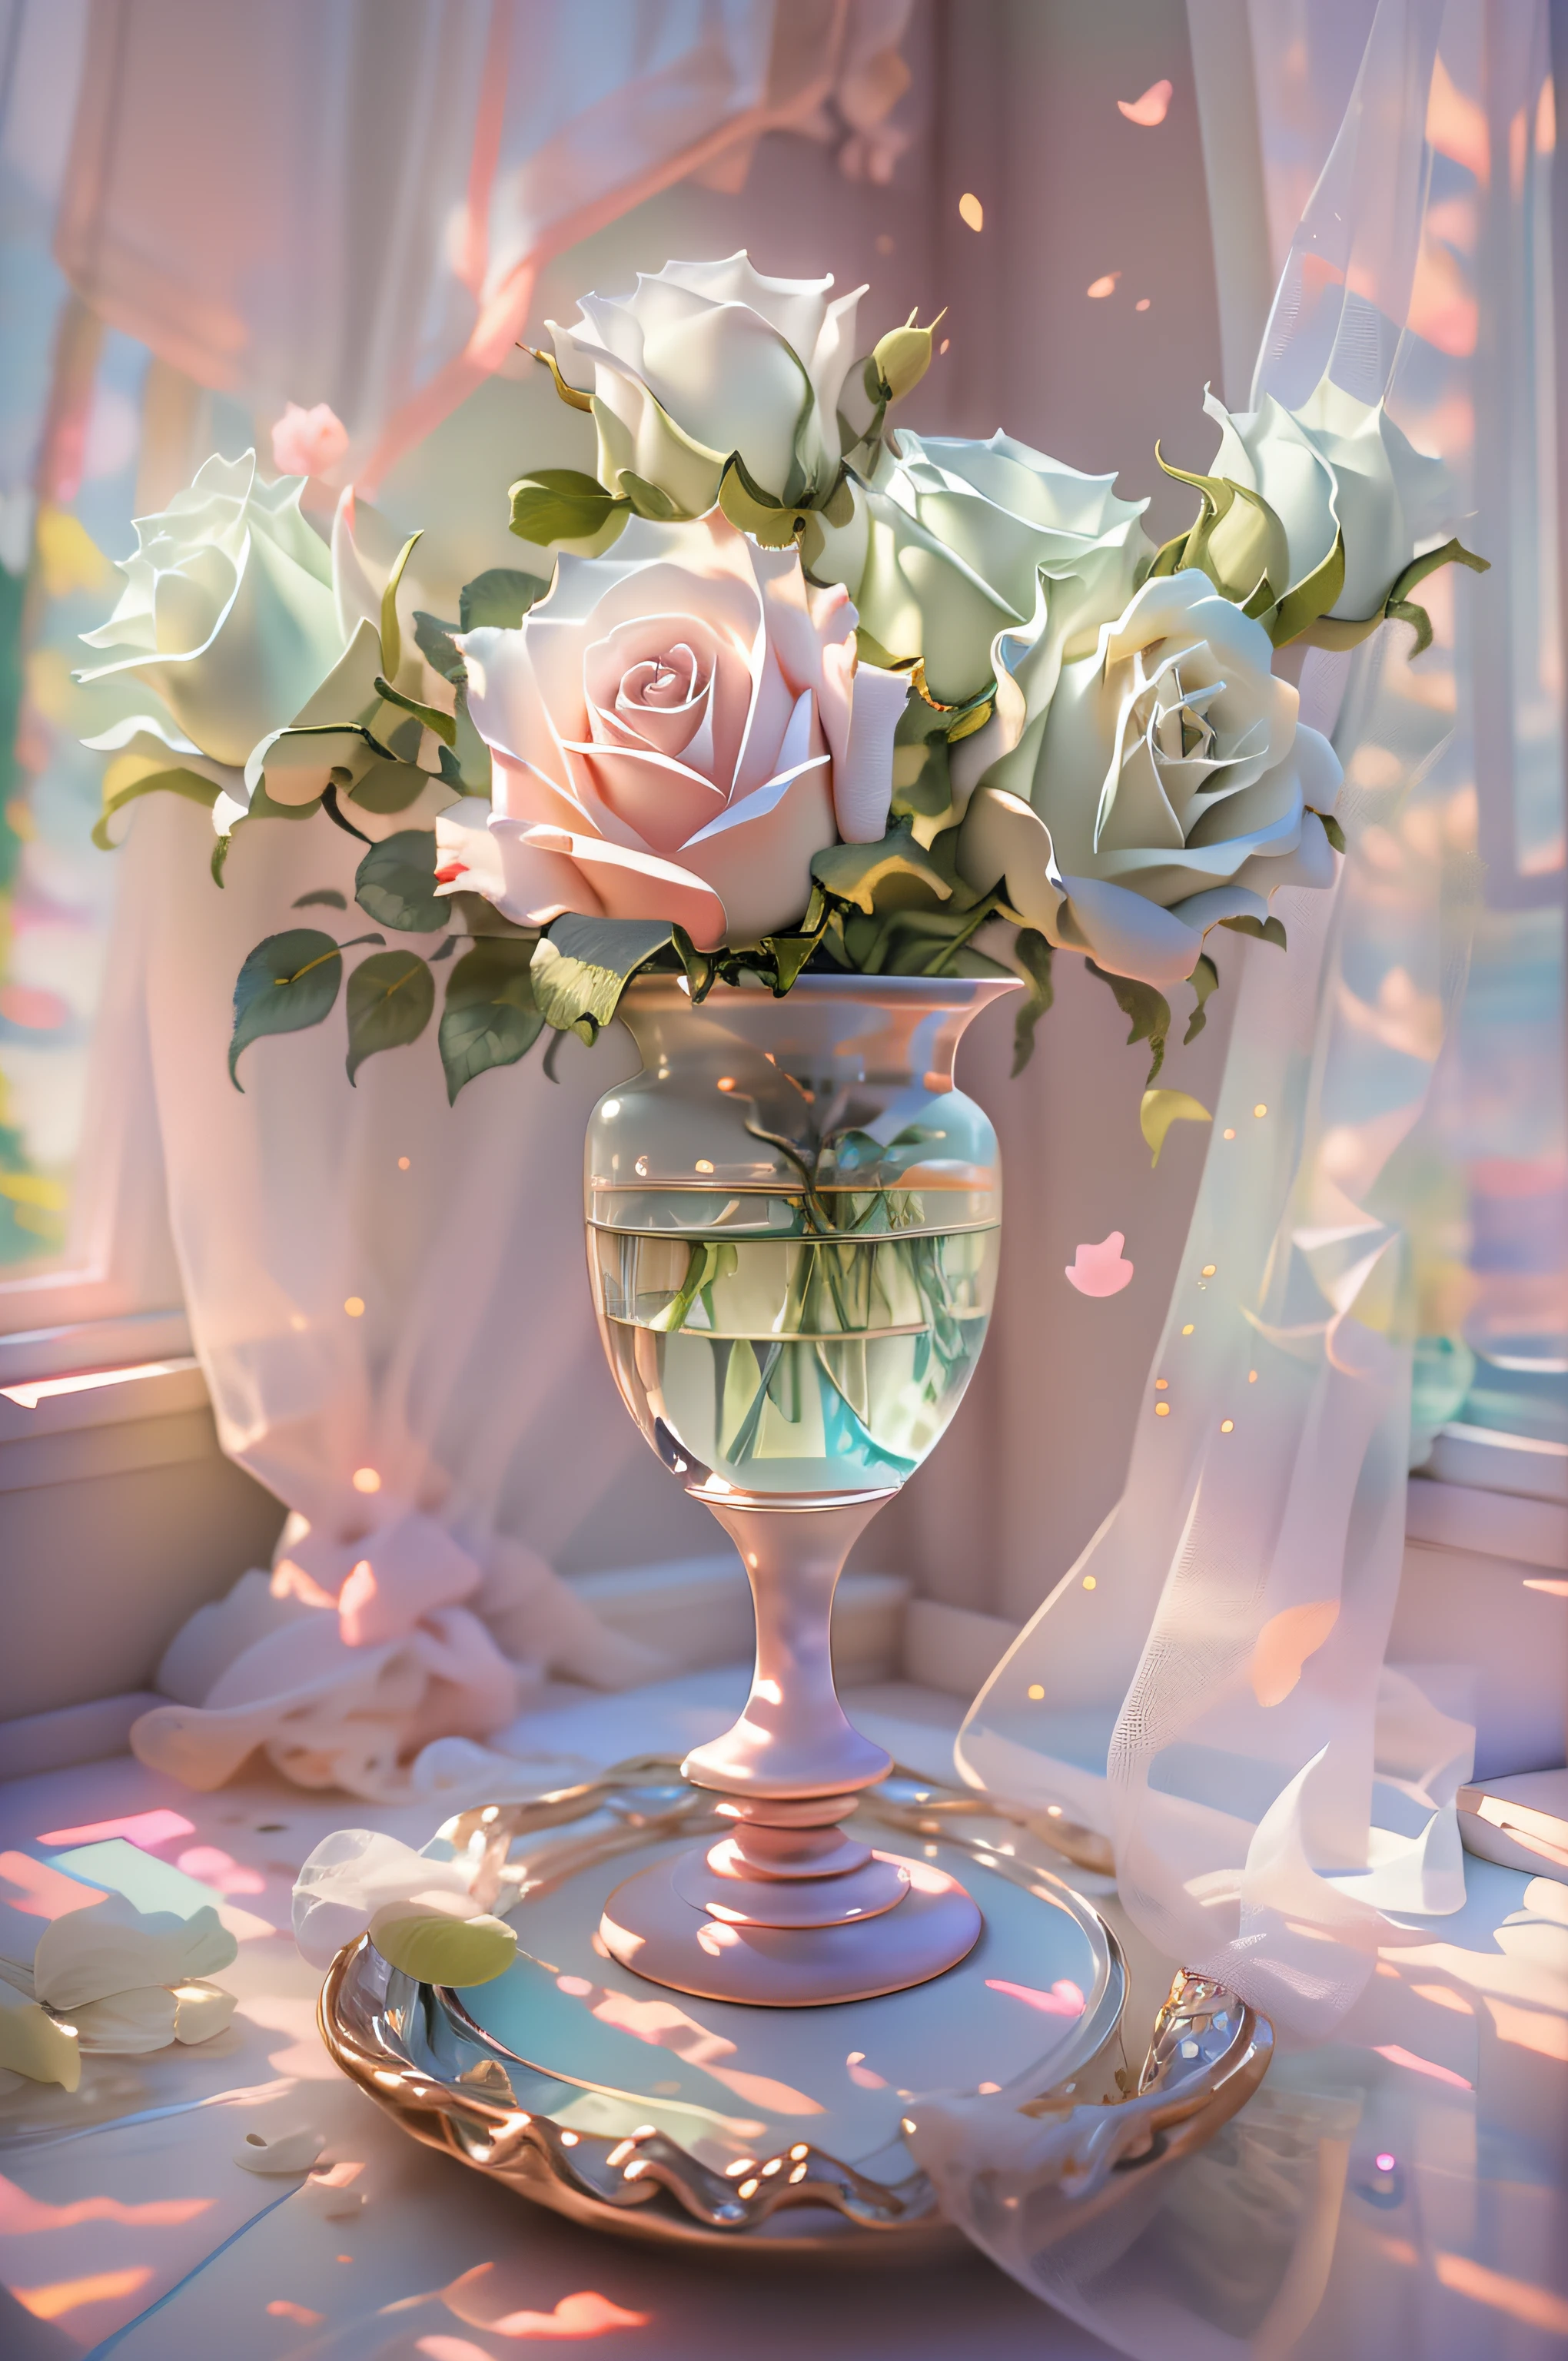 Zarte Vase mit Aurorafarbe und Glanz，Weiße Rosen，Tüllvorhänge，neben dem Fenster，Die Sonne scheint in，Das Licht der Heckscheibe ist von hinten beleuchtet，Hintergrund leer， Ultraklare Details， hohe hohe Qualität， 8K，Meisterstück，𝓡𝓸𝓶𝓪𝓷𝓽𝓲𝓬，Schön，atemberaubende detaillierte